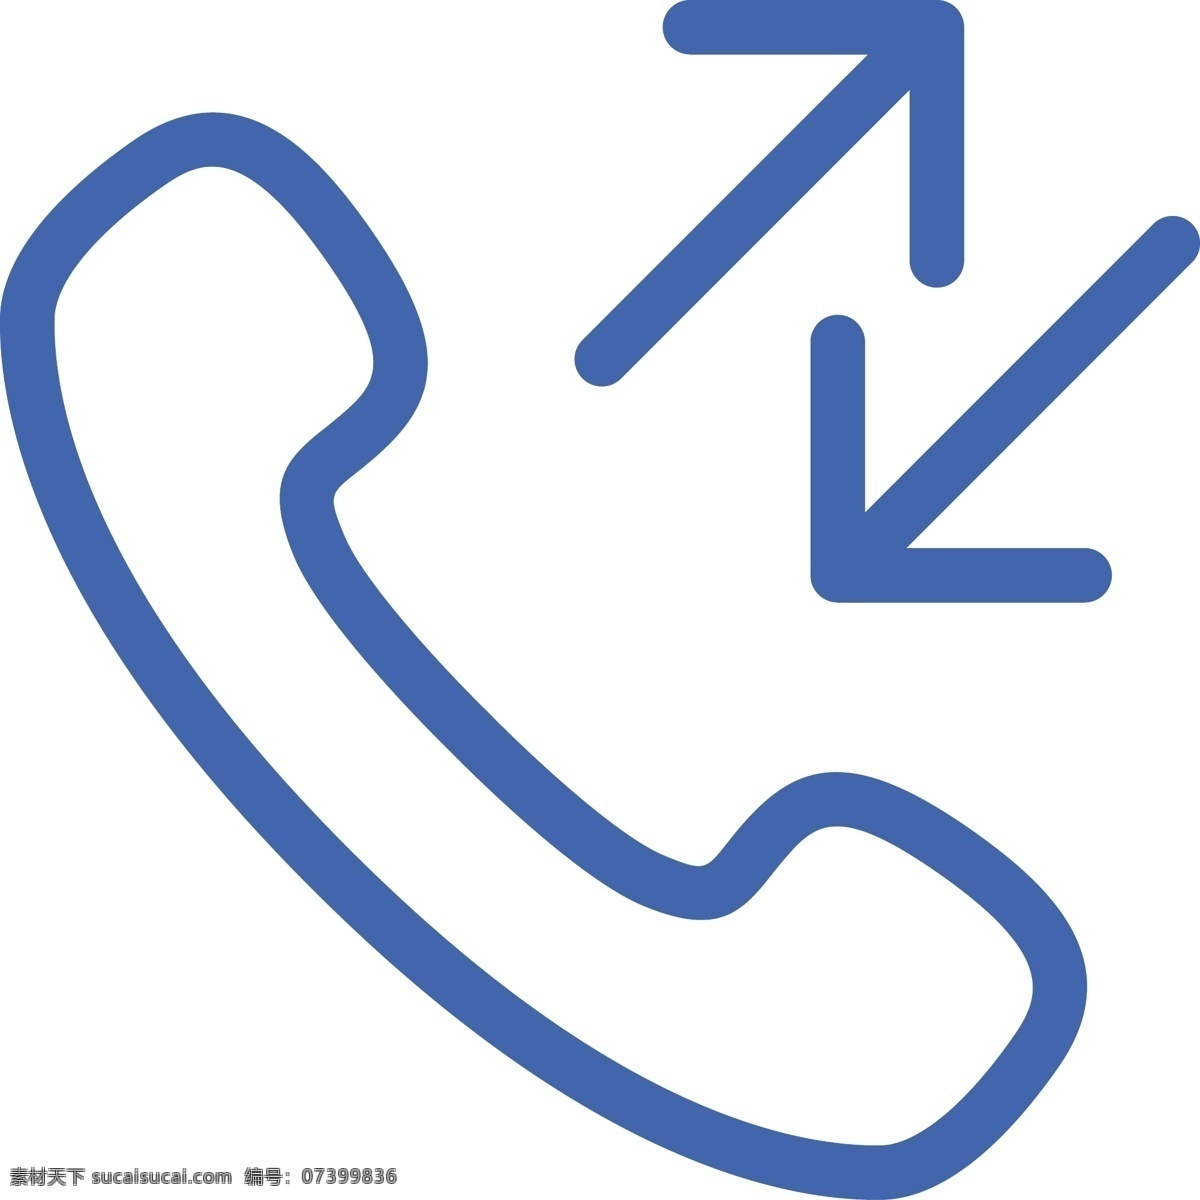 通话 记录 接听 电话 电话机 手机 拨打 图标 拨入电话 拨出电话 通话记录 电话营销 客户服务 呼叫服务 耳机 话务员 客服 手机拨打 看手机